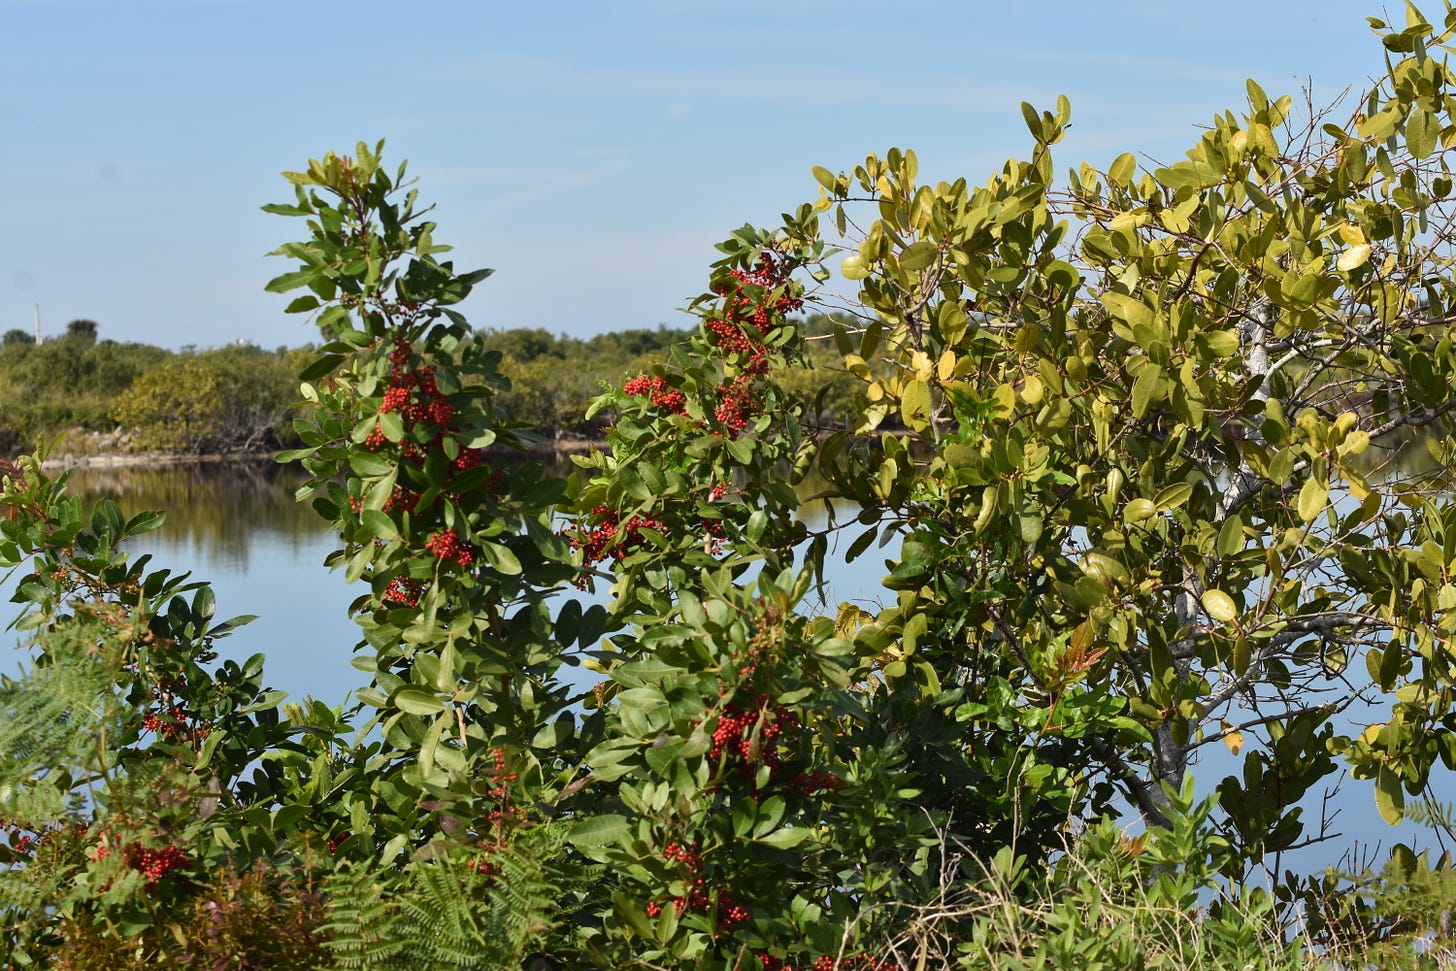 Brazilian Pepper encroaching on black mangroves